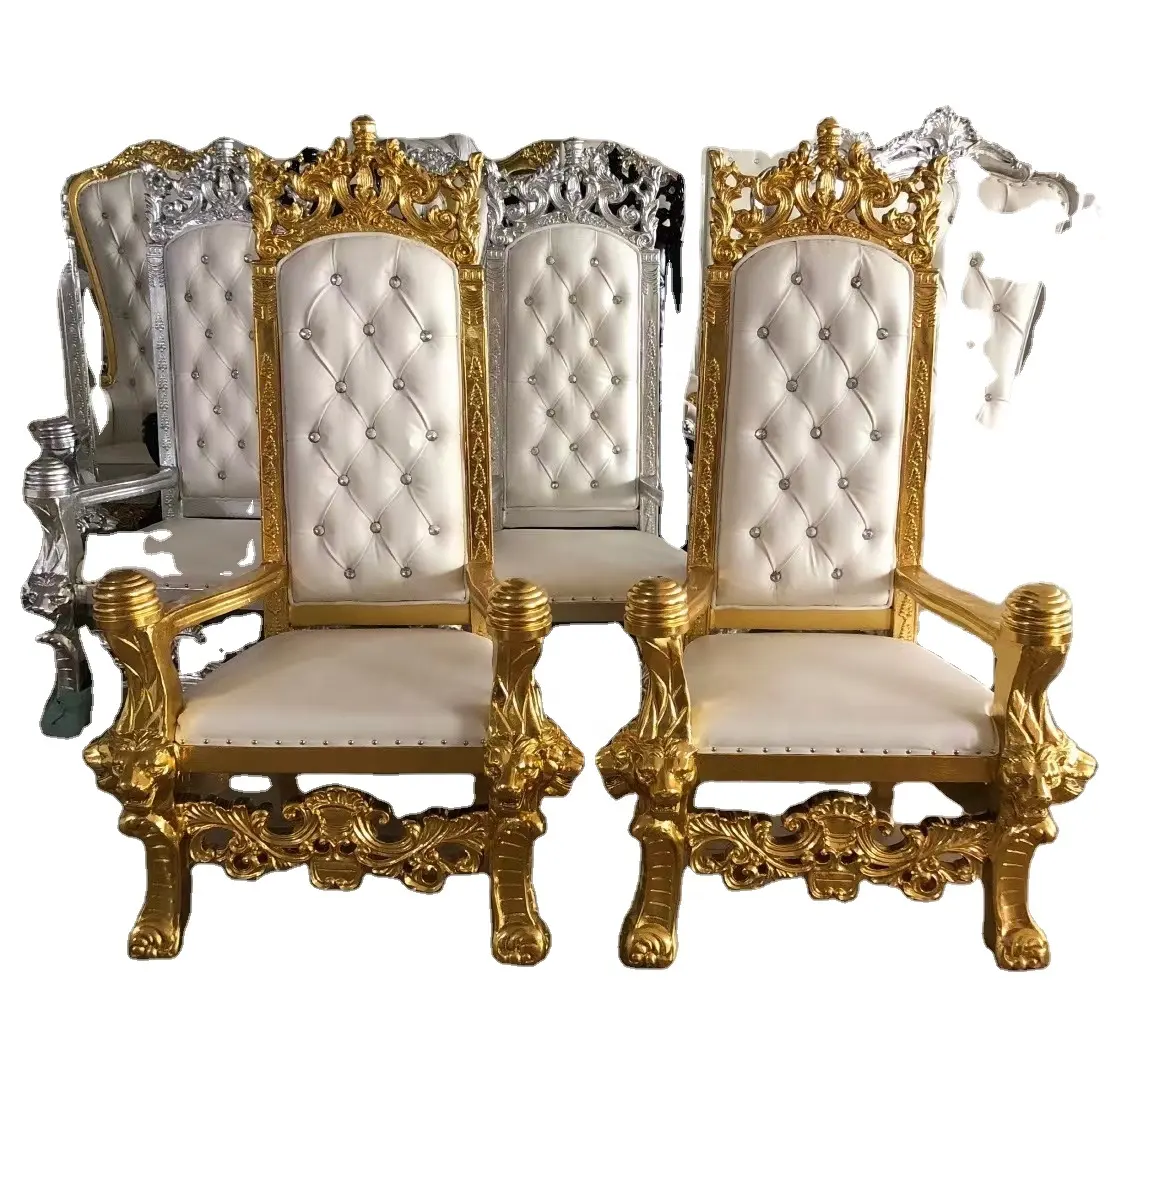 Foshan fabbrica di lusso antico trono schienale alto sedia classico oro/argento intaglia in legno con bianco in pelle per banchetti Villa evento